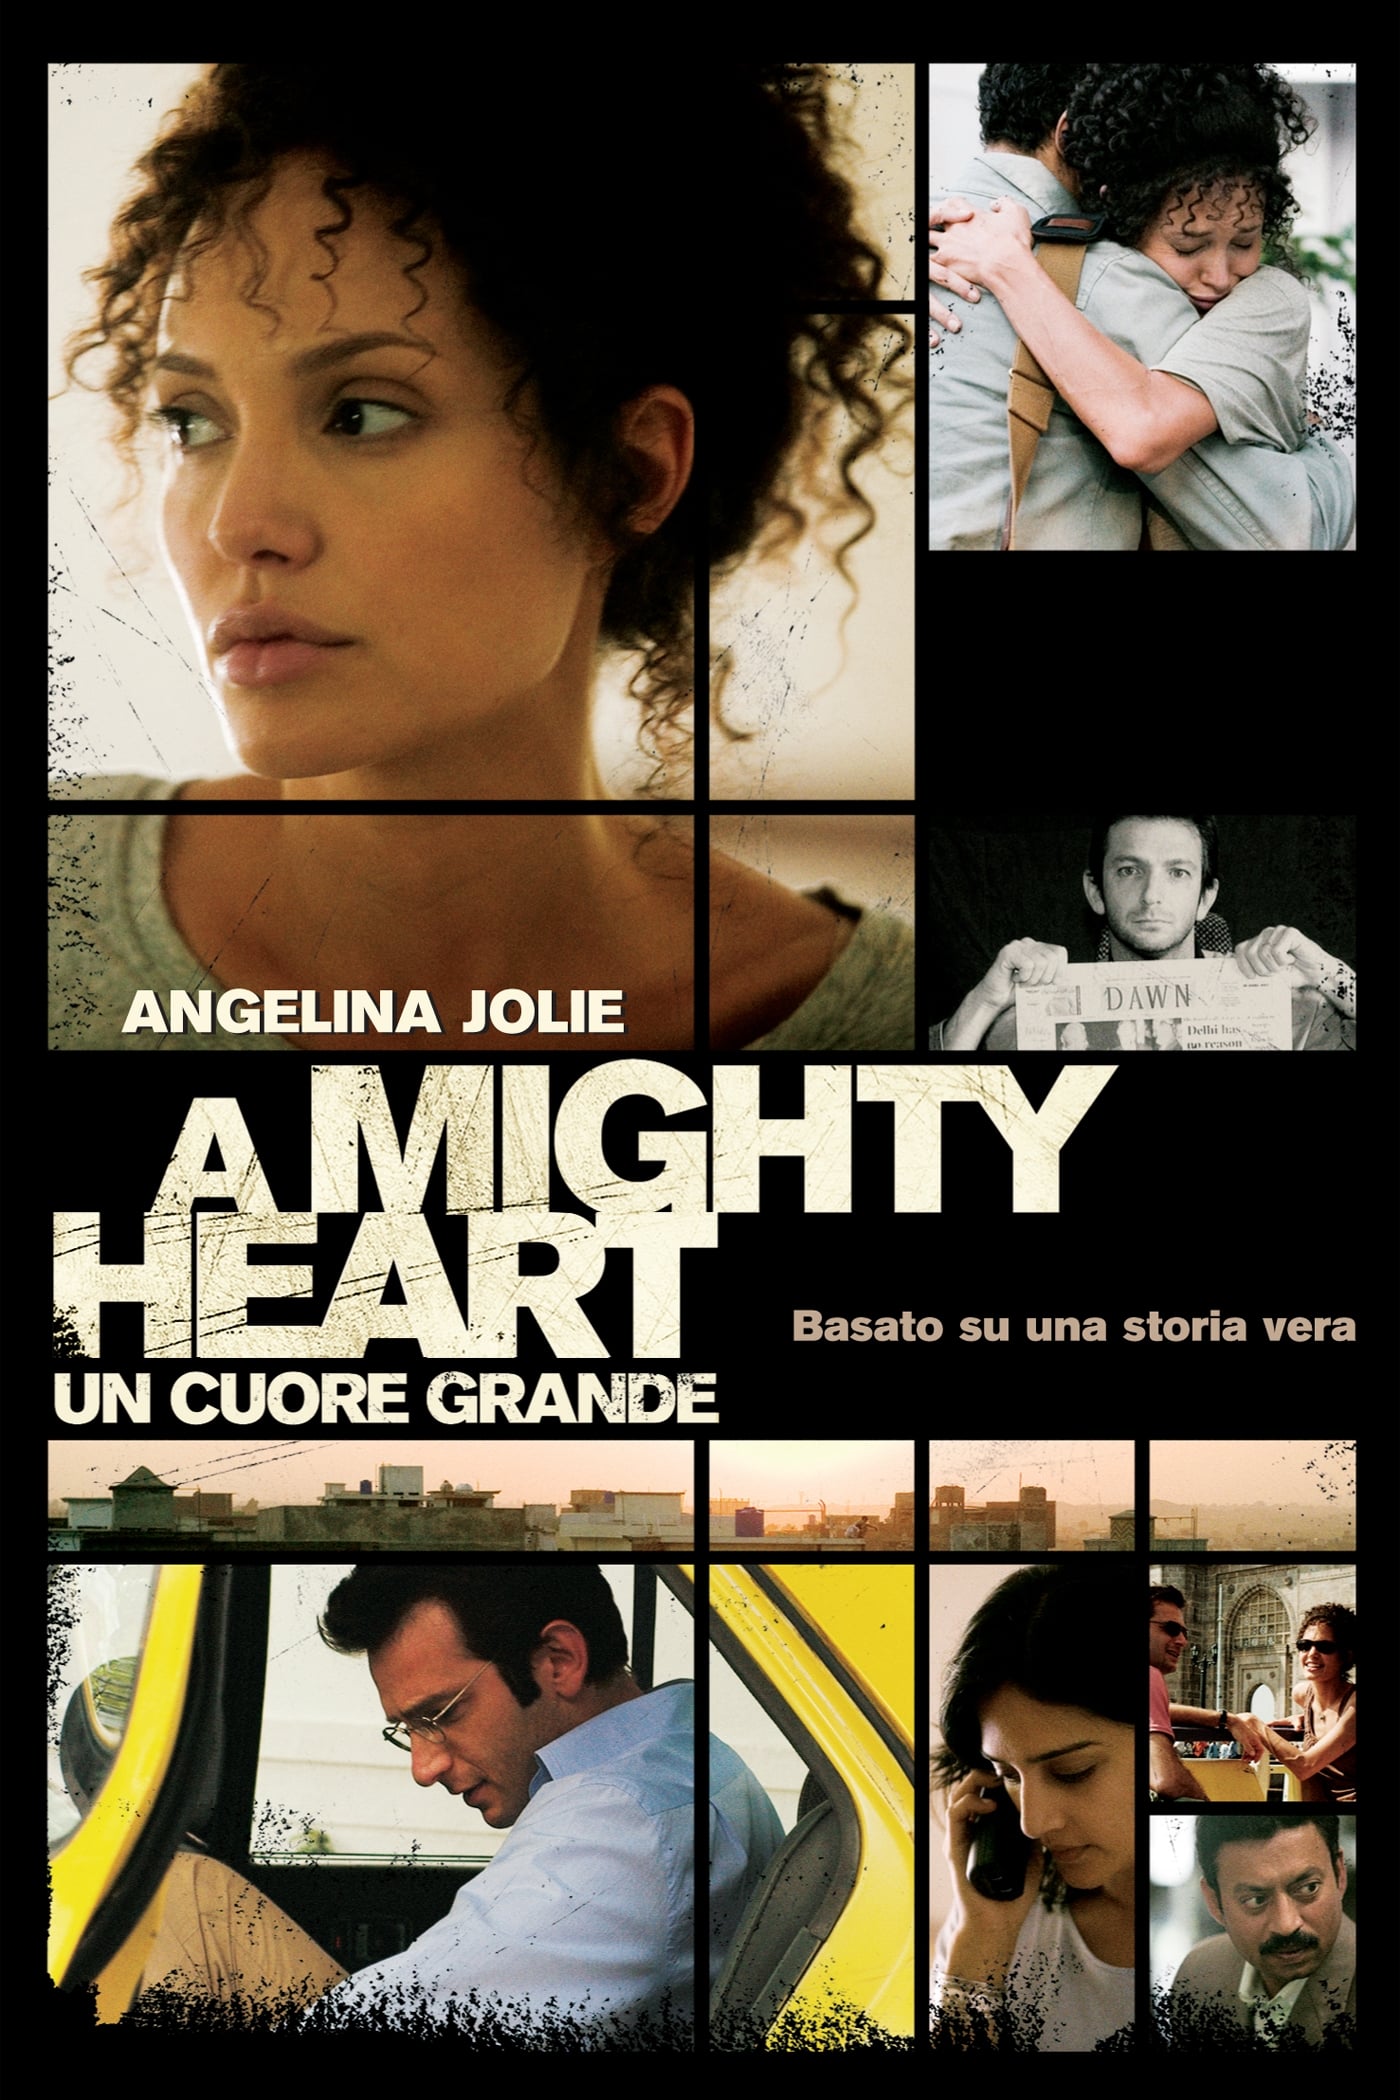 A Mighty Heart - Un cuore grande film